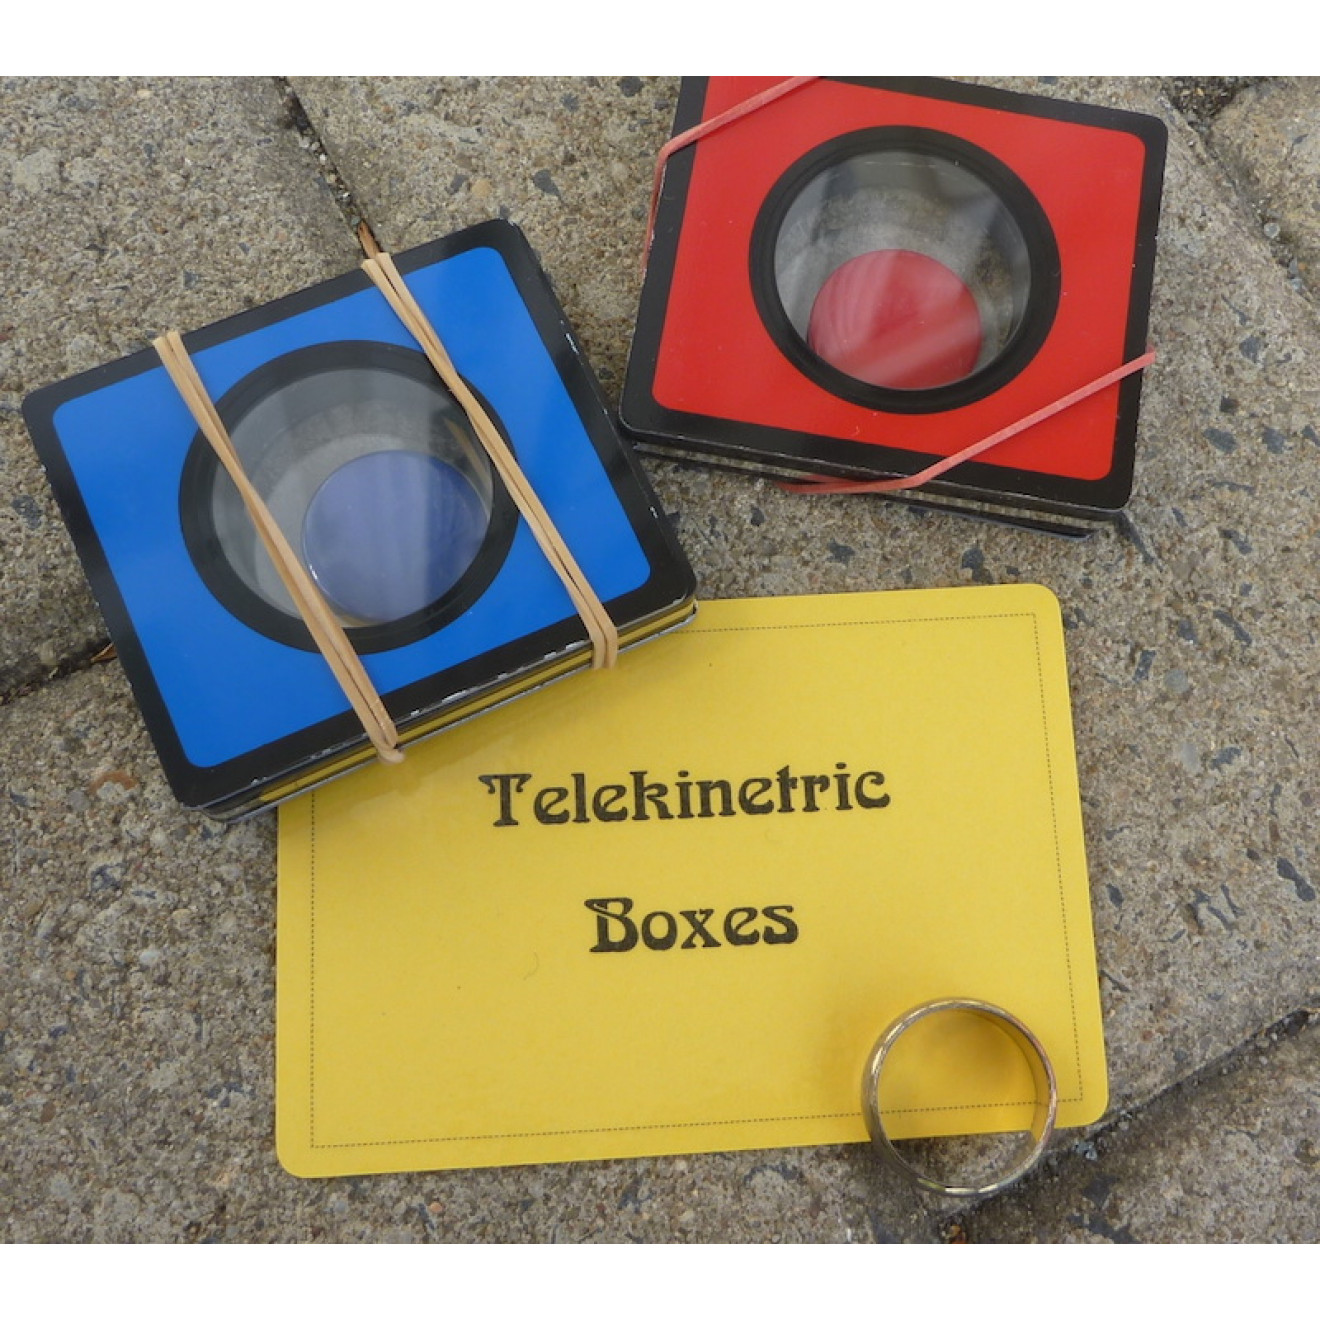 Telekinetic Boxes